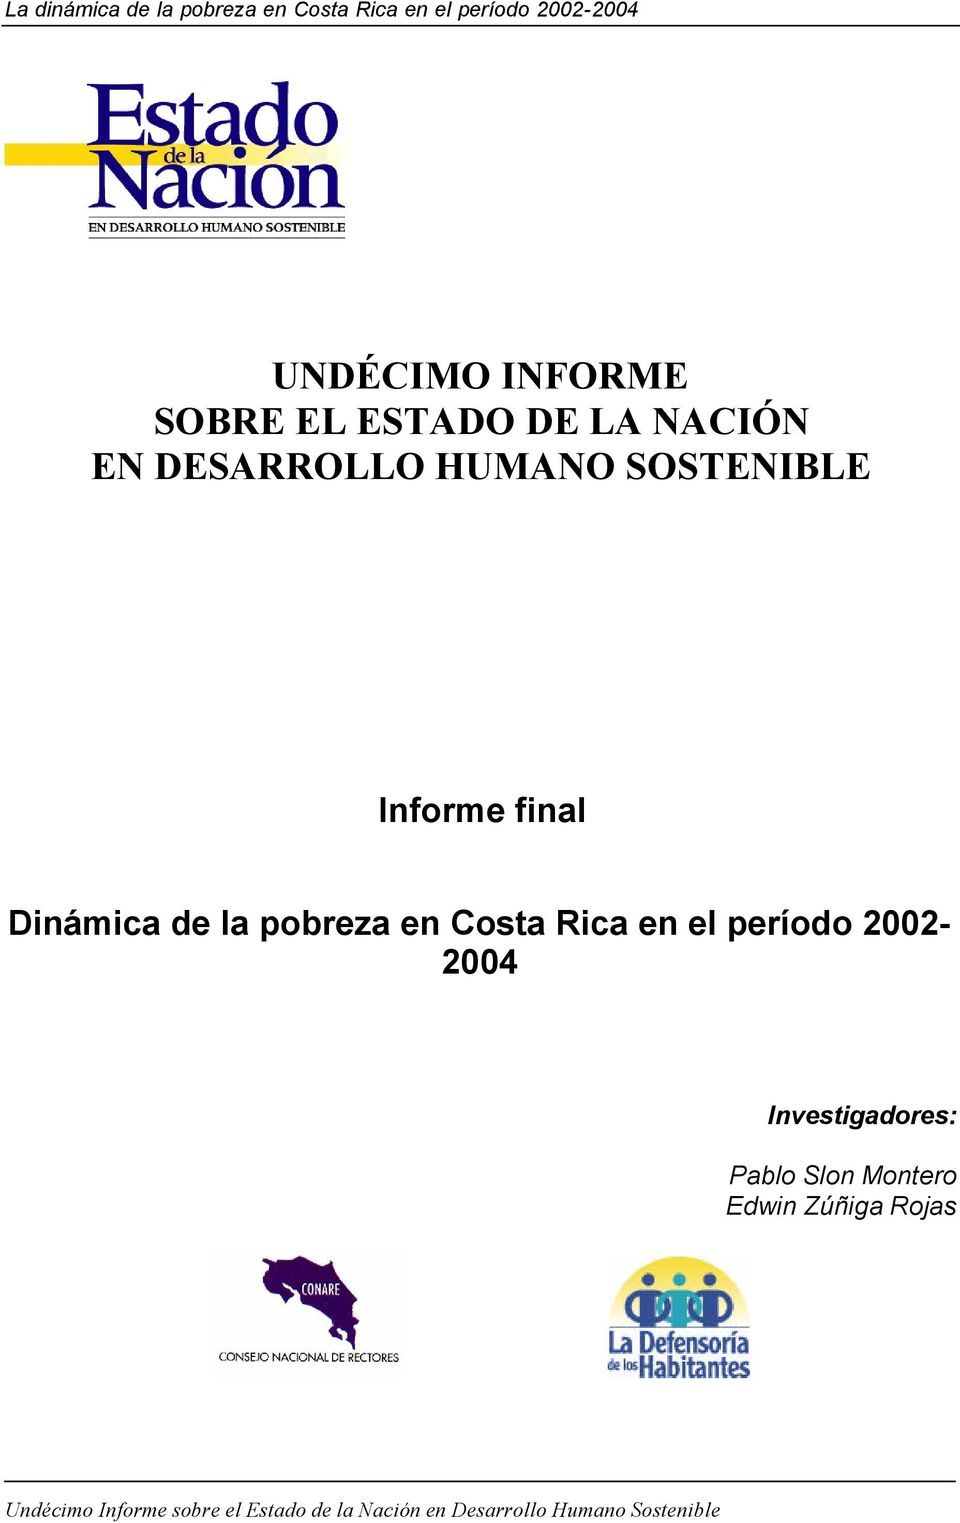 de la pobreza en Costa Rica en el período 2002-2004